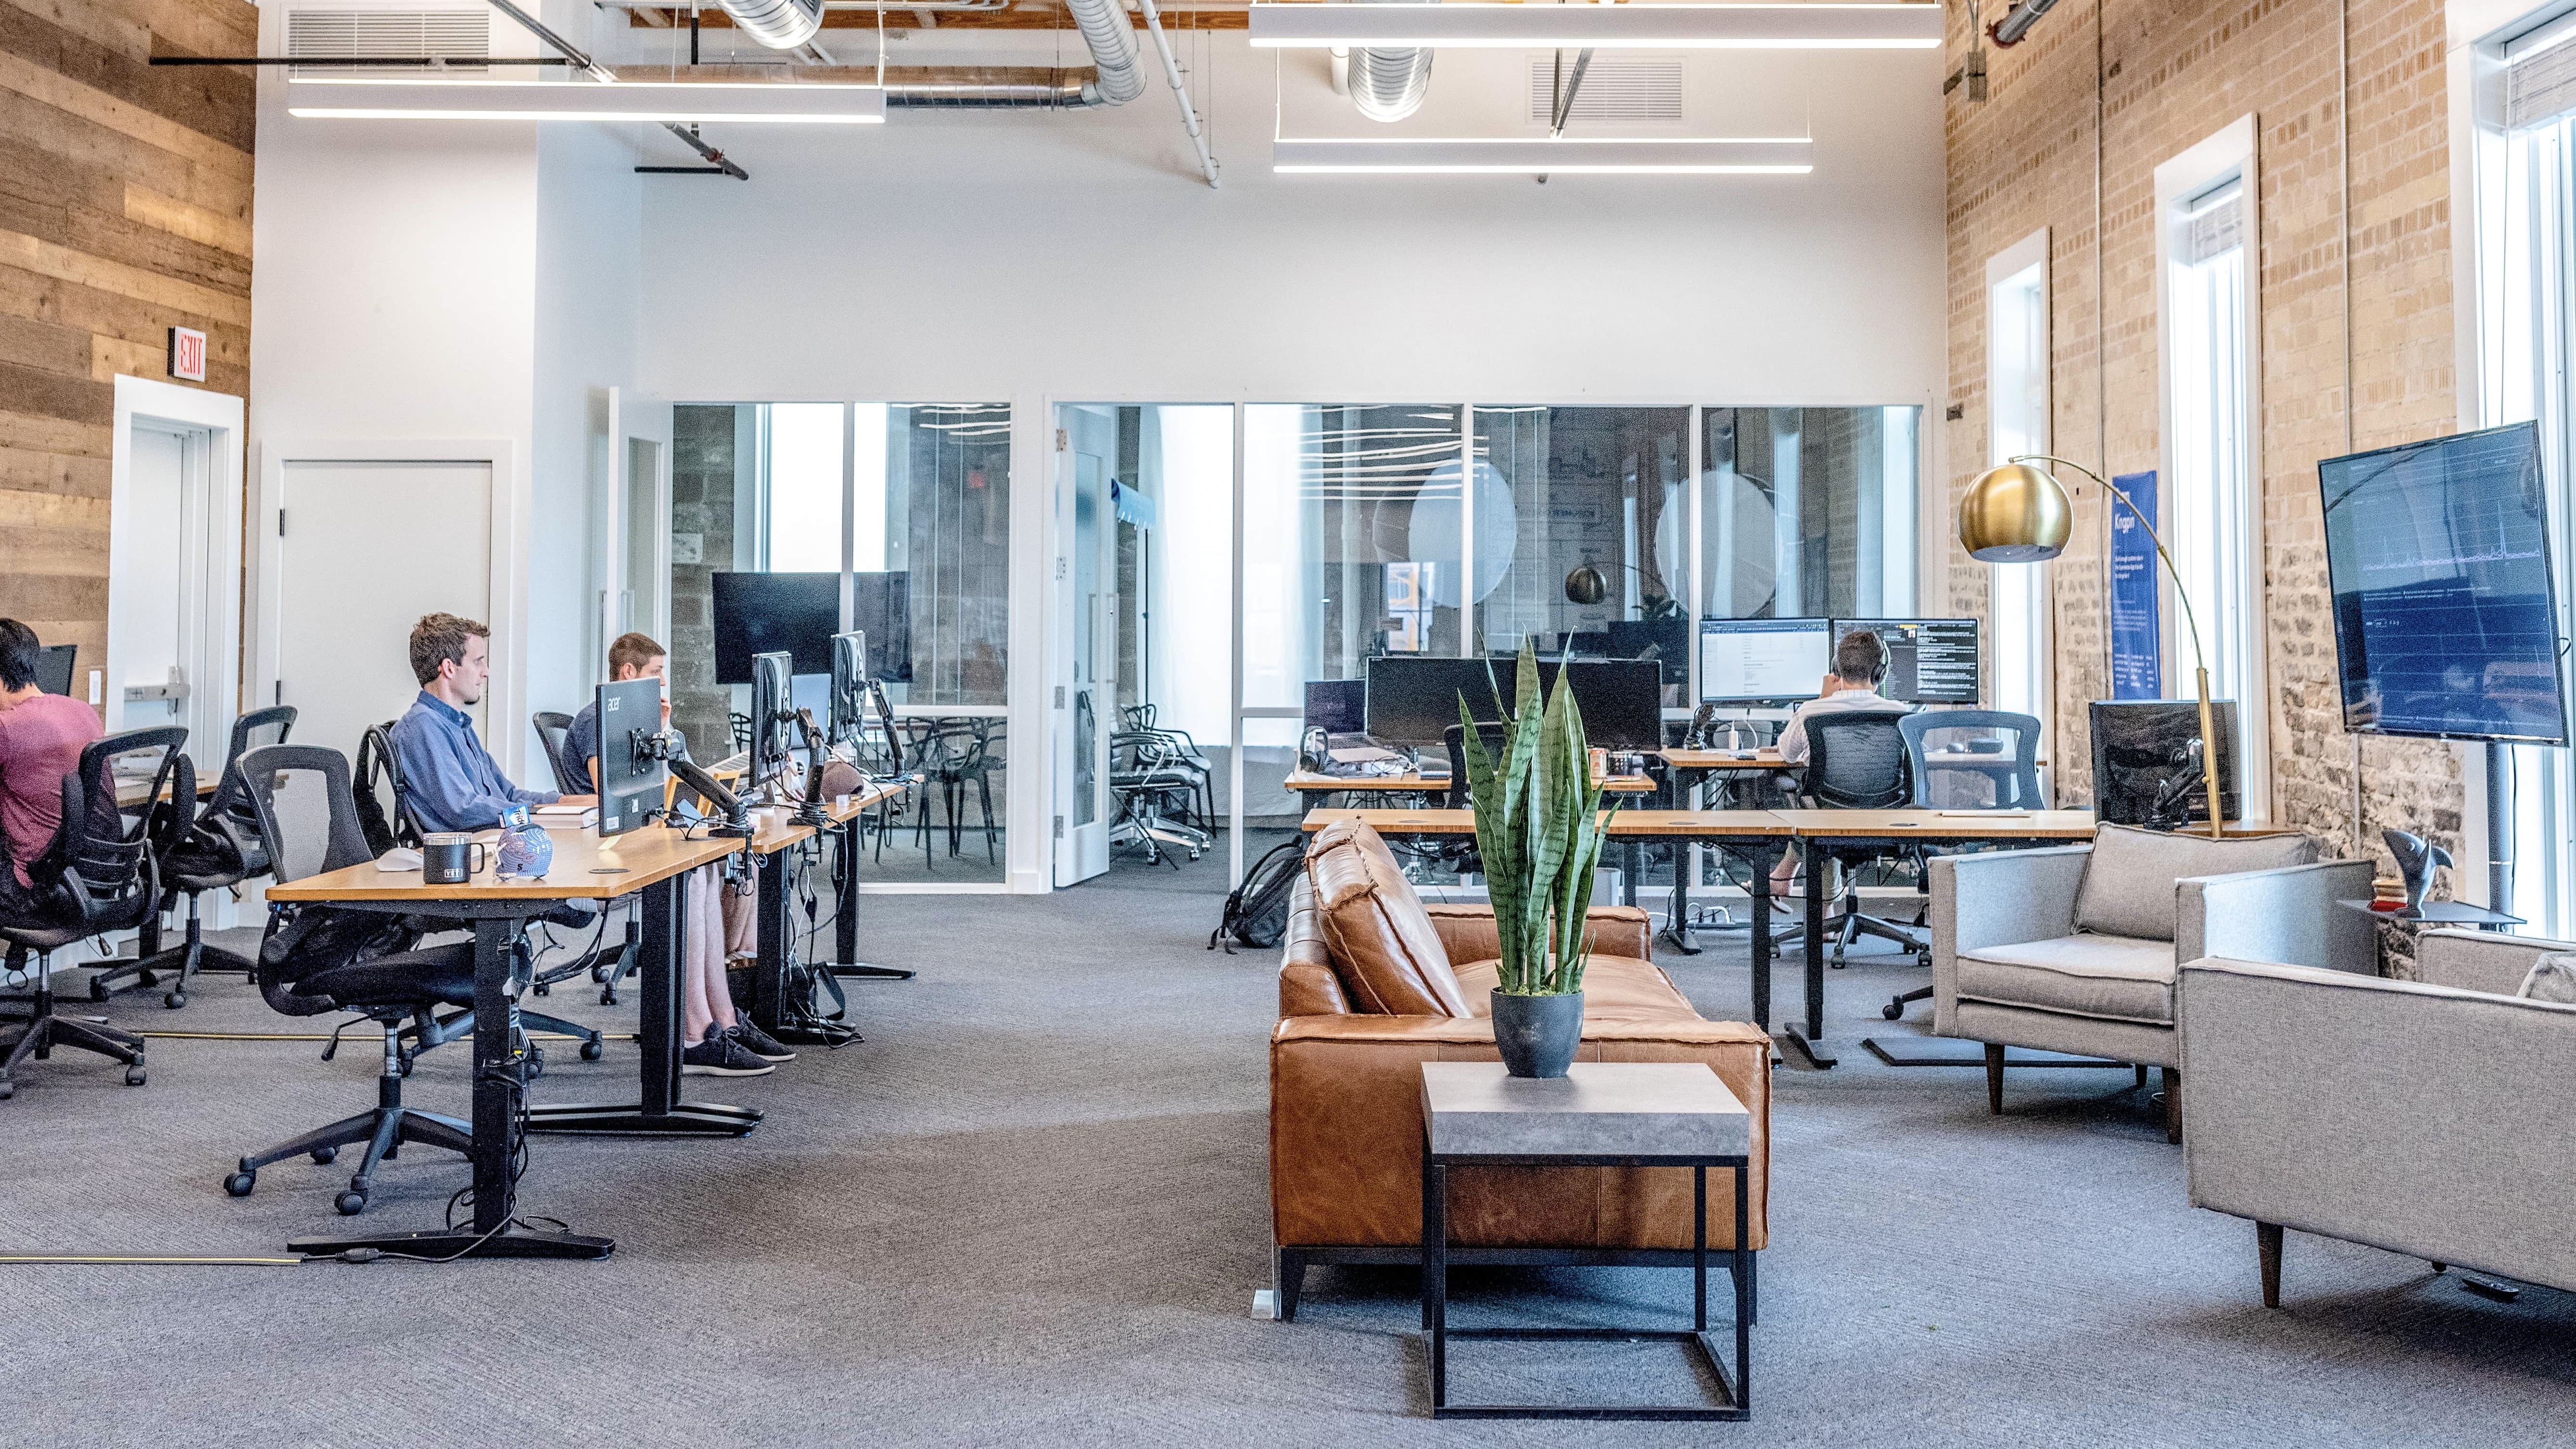 Büro der Zukunft: Wie moderne Arbeitsumgebungen aussehen könnten